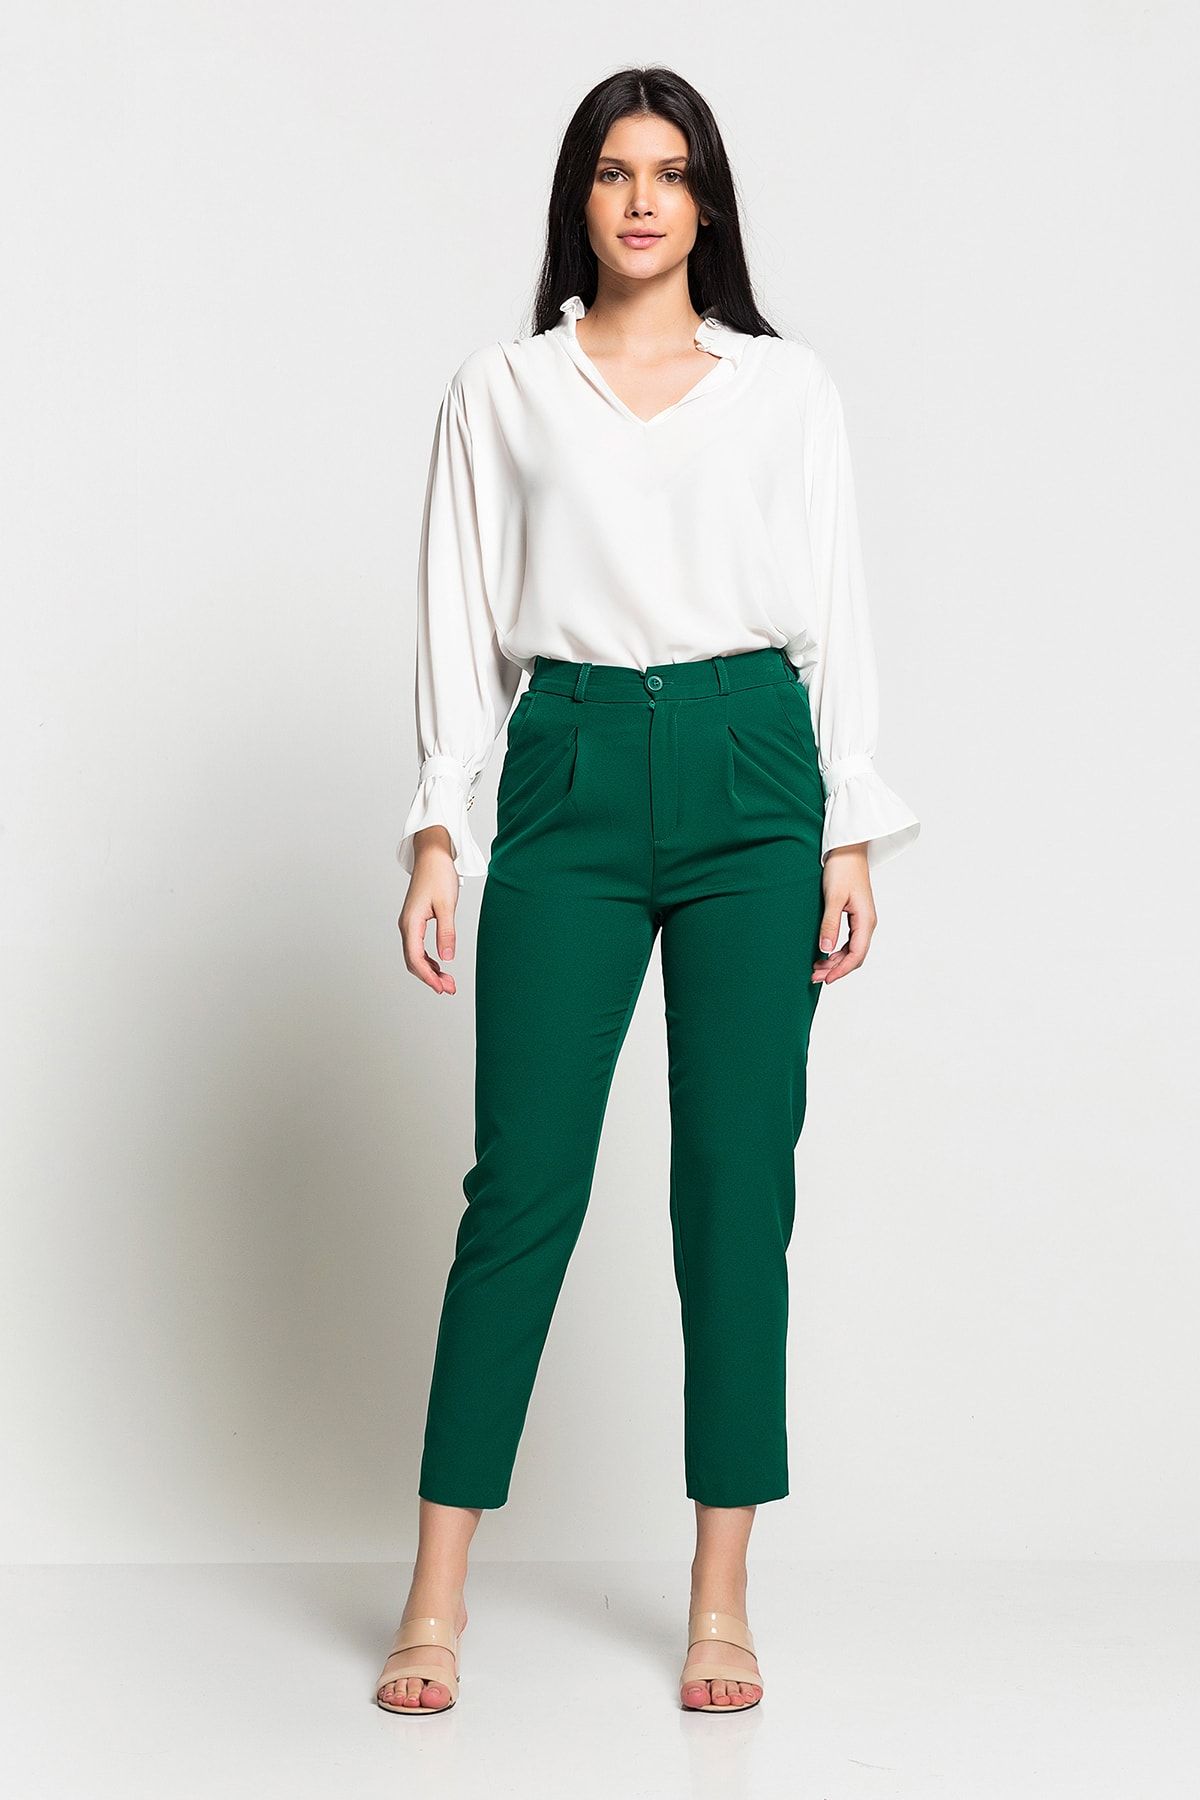 Luppio Kadın Yeşil Yüksek Bel Düğmeli Rahat Kesim Pantolon